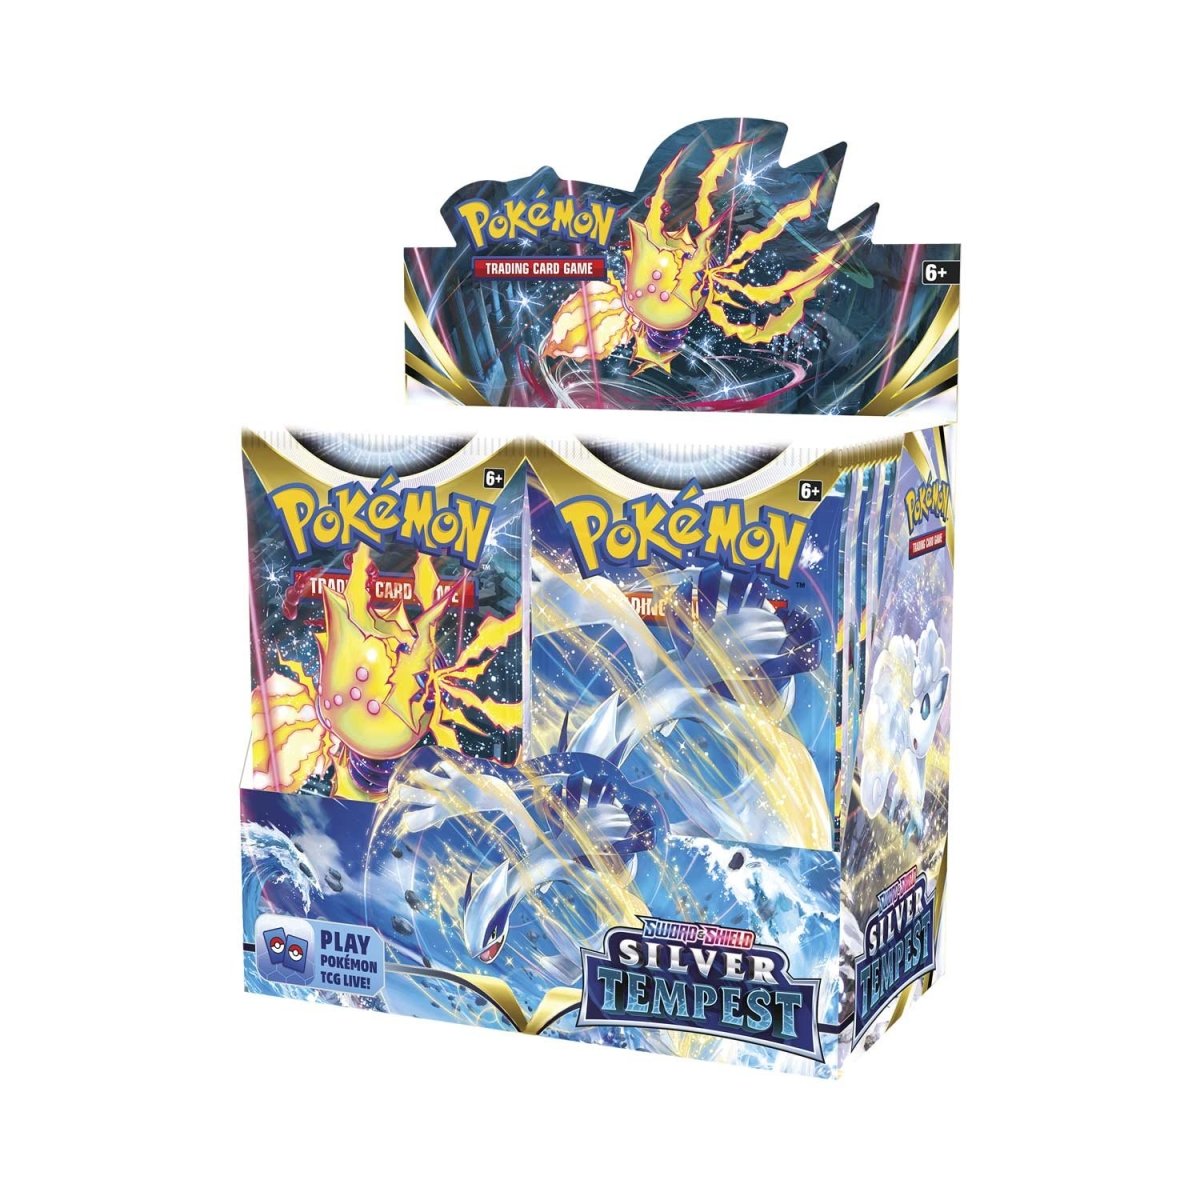 Pokemon: Sword & Shield - Silver Tempest - Booster Box